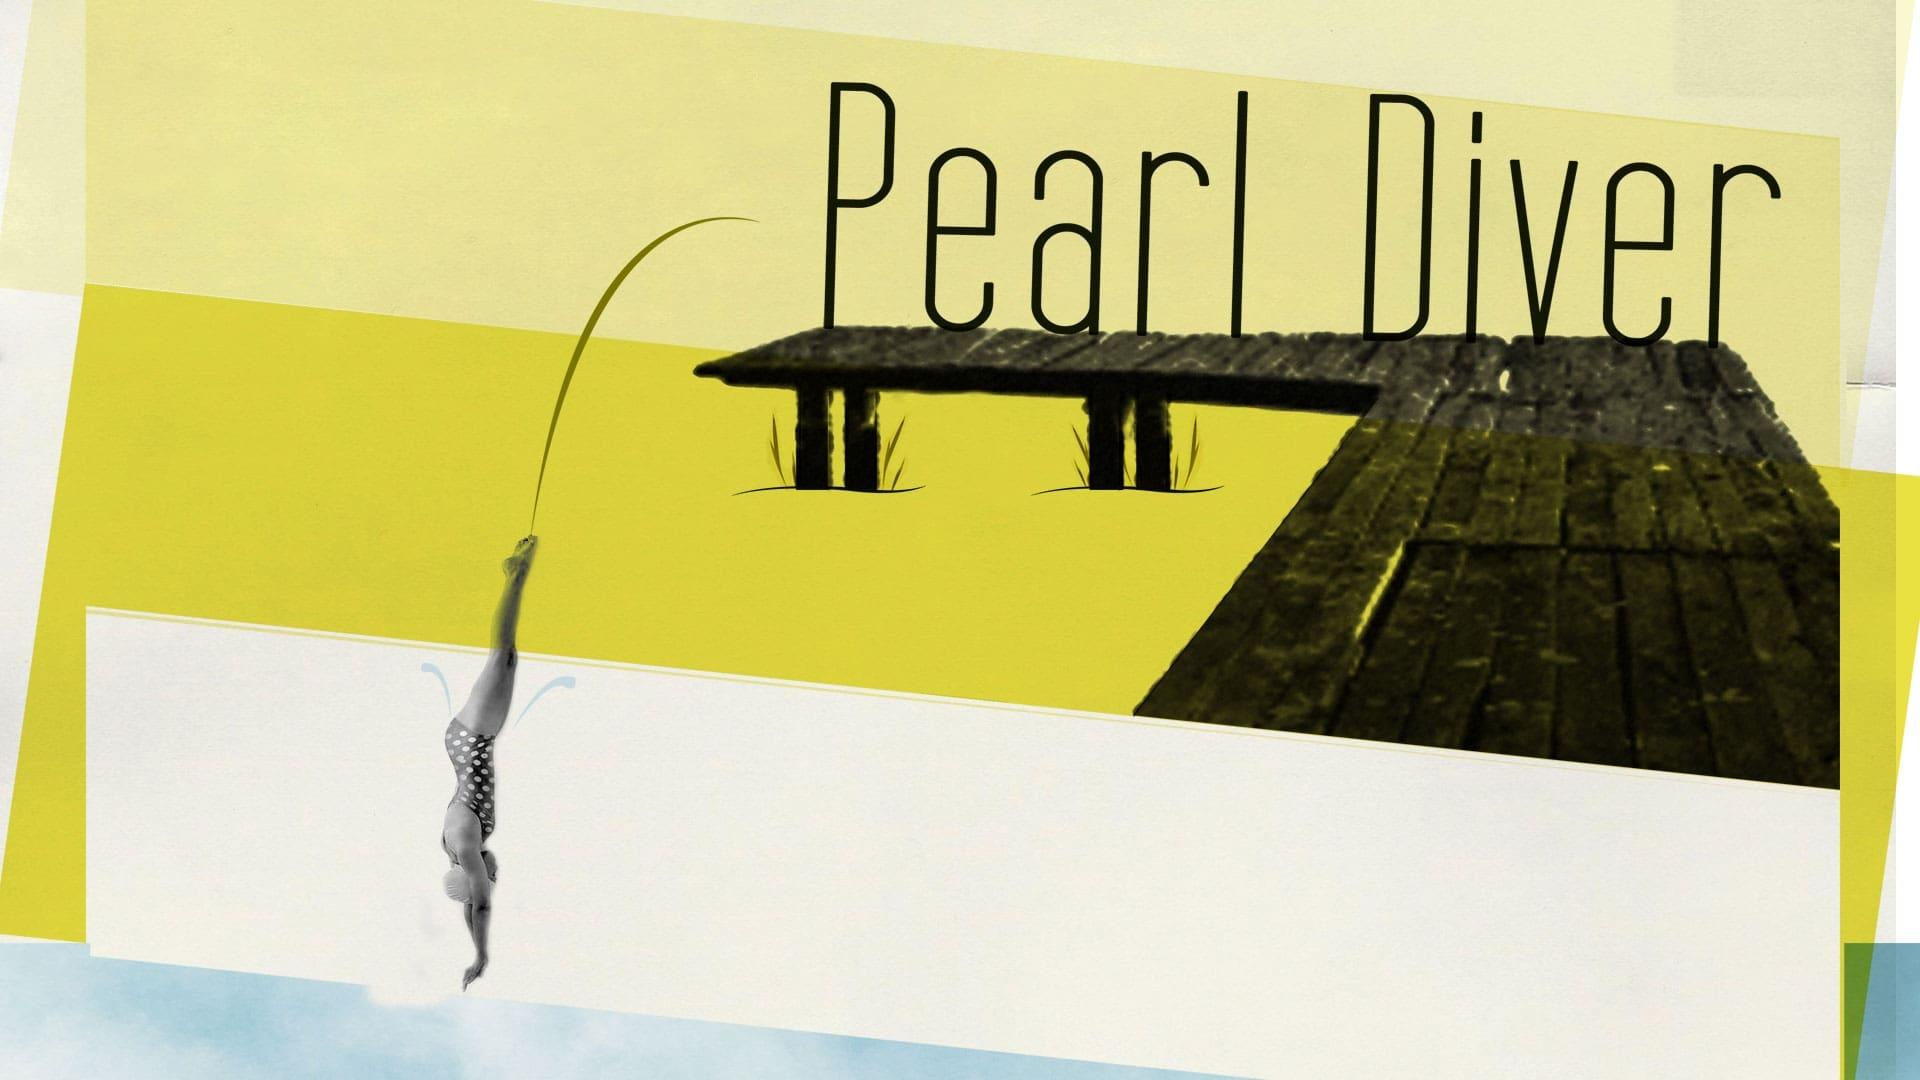 Pearl Diver backdrop